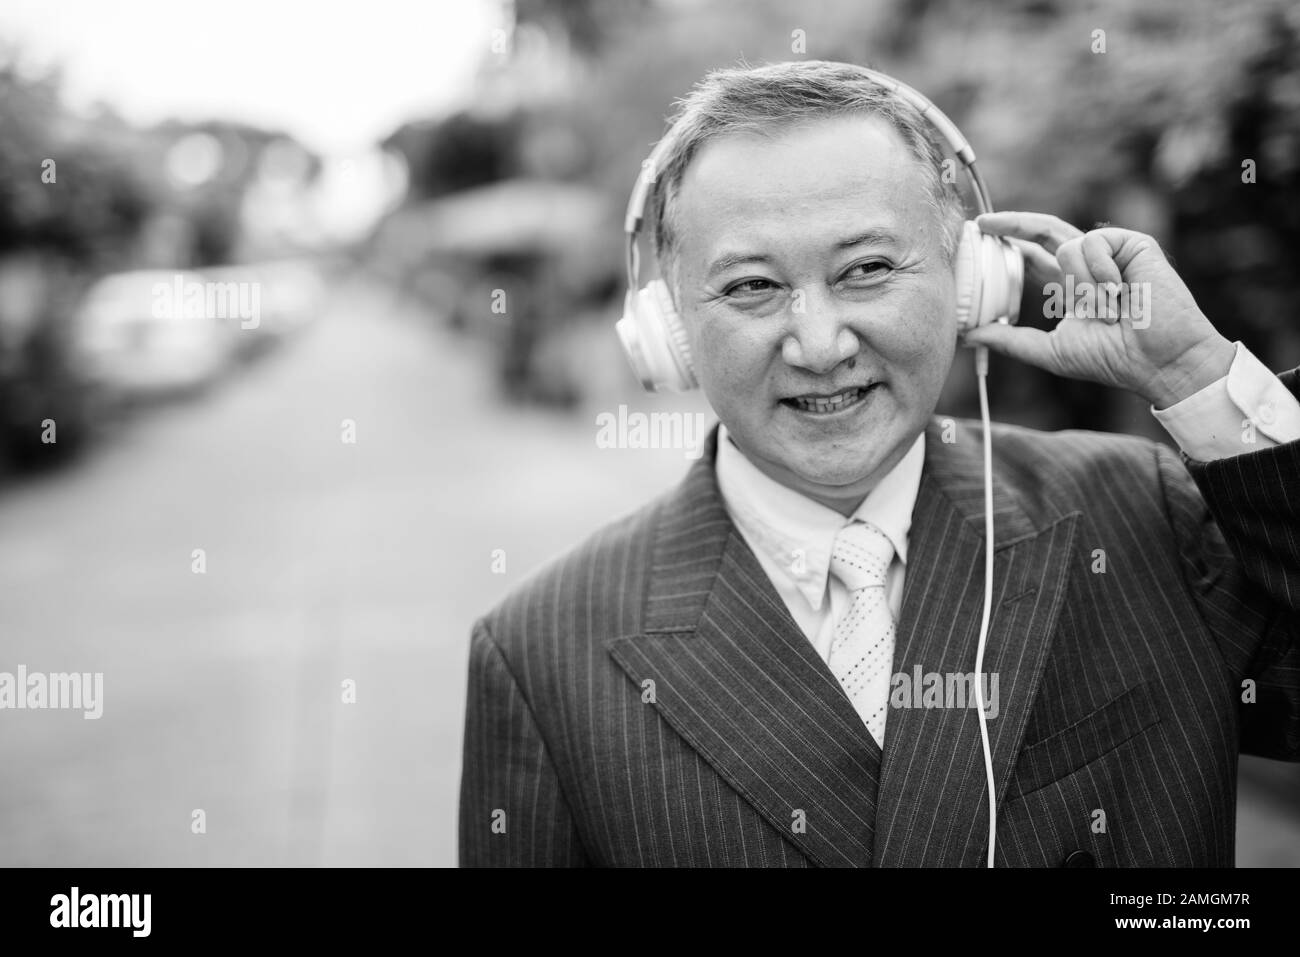 Ritratto di uomo d'affari asiatico maturo indossando il vestito mentre ascolta la musica nelle strade all'aperto Foto Stock